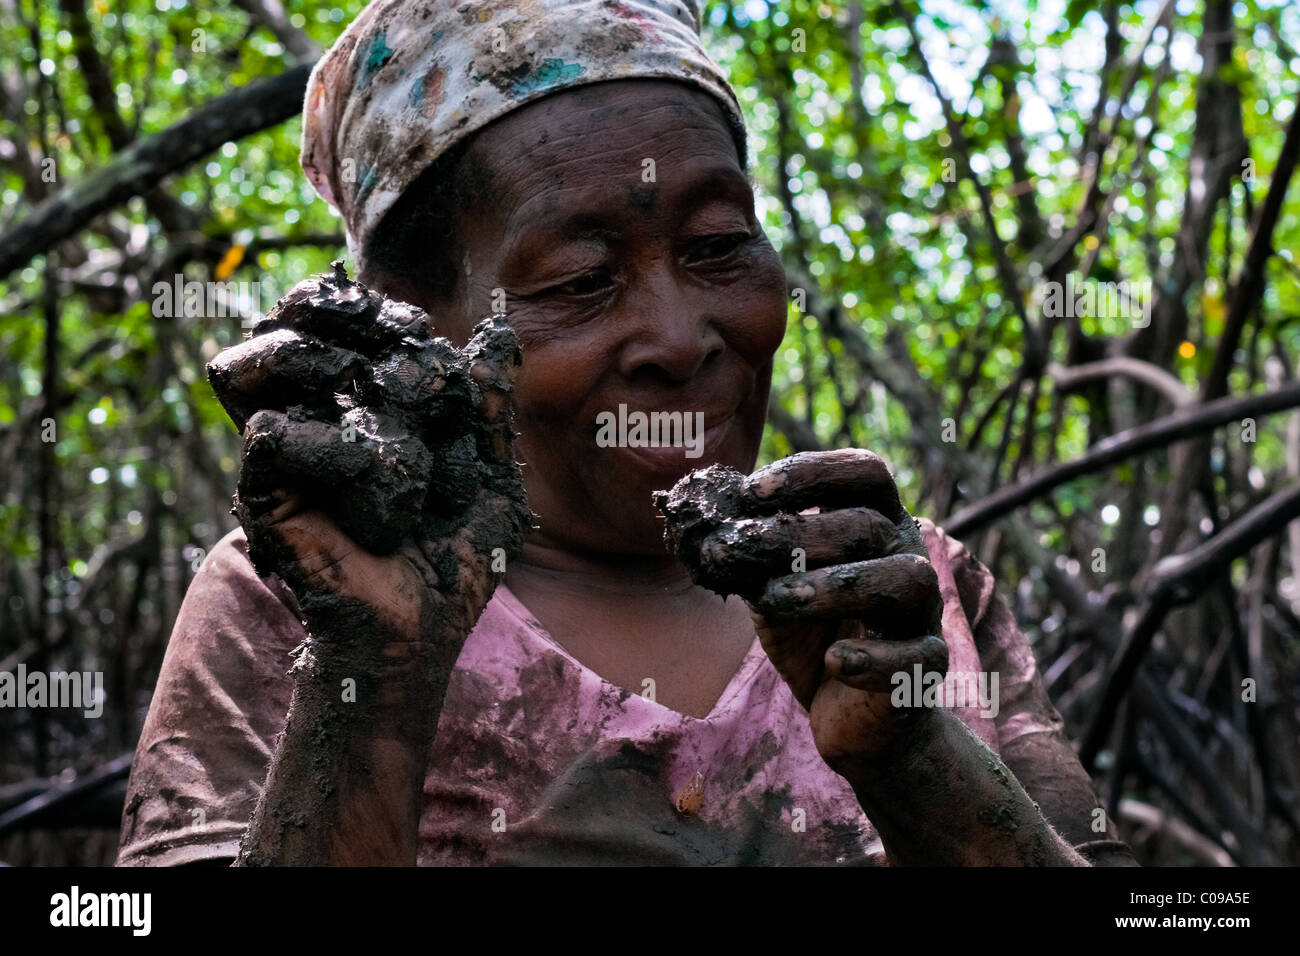 Eine kolumbianische Frau zeigt schlammige Meeresfrüchten, gesammelt in den Mangrovensümpfen an der Pazifikküste, Kolumbien. Stockfoto